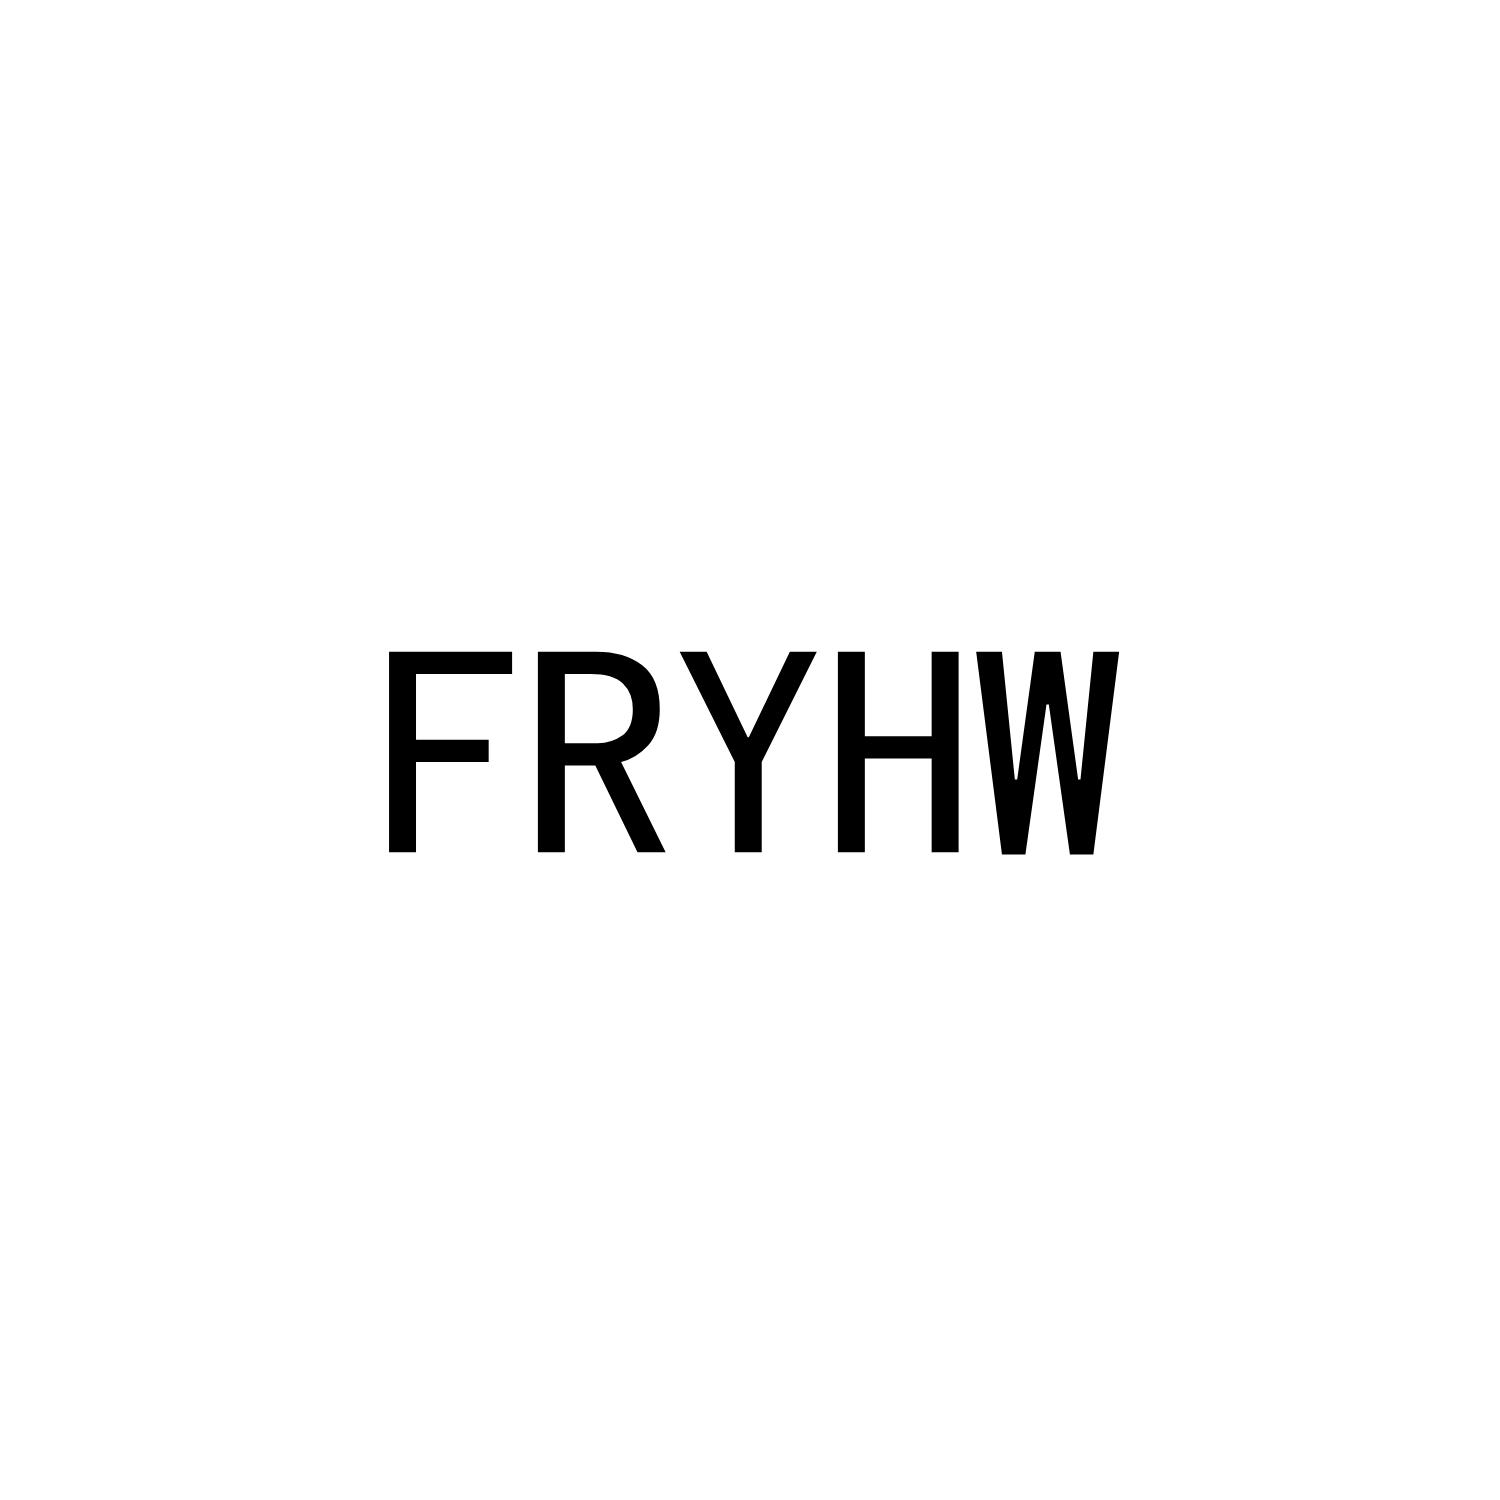 FRYHW